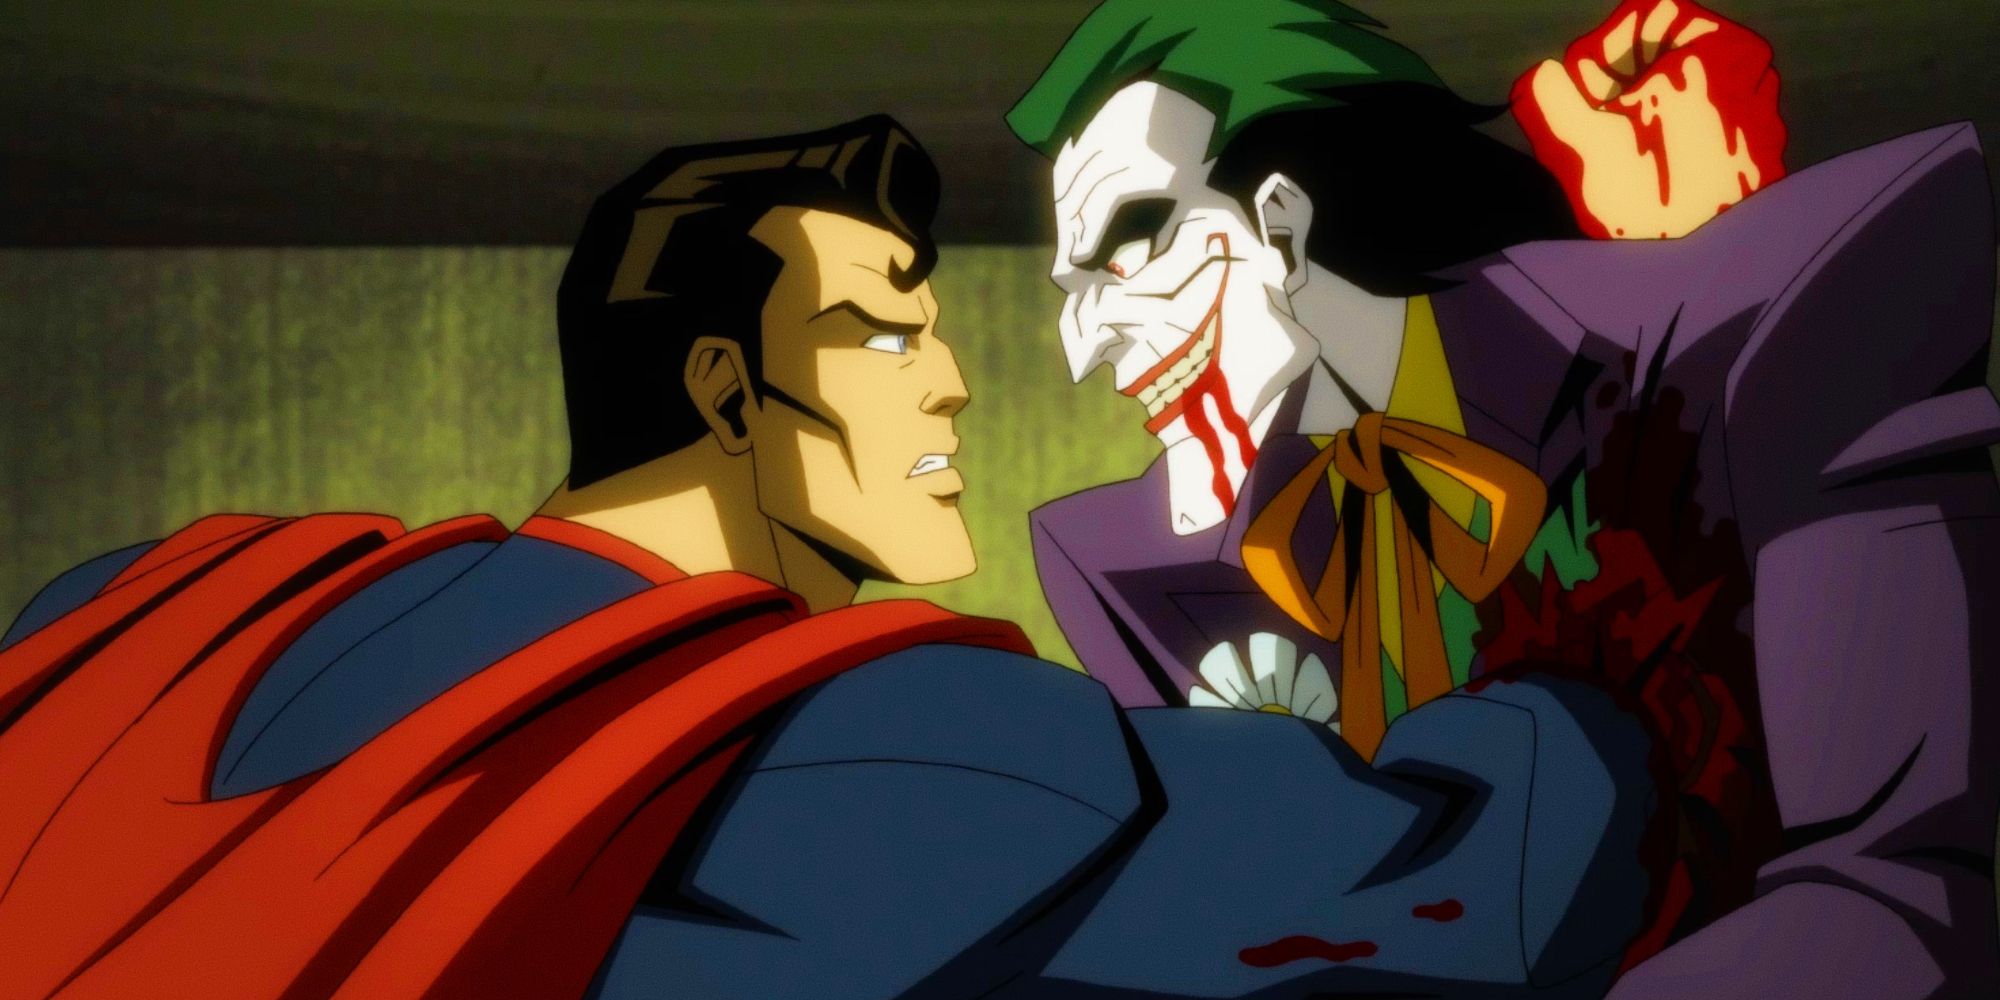 El tráiler con clasificación R de Injustice revela el brutal asesinato del Joker por parte de Superman